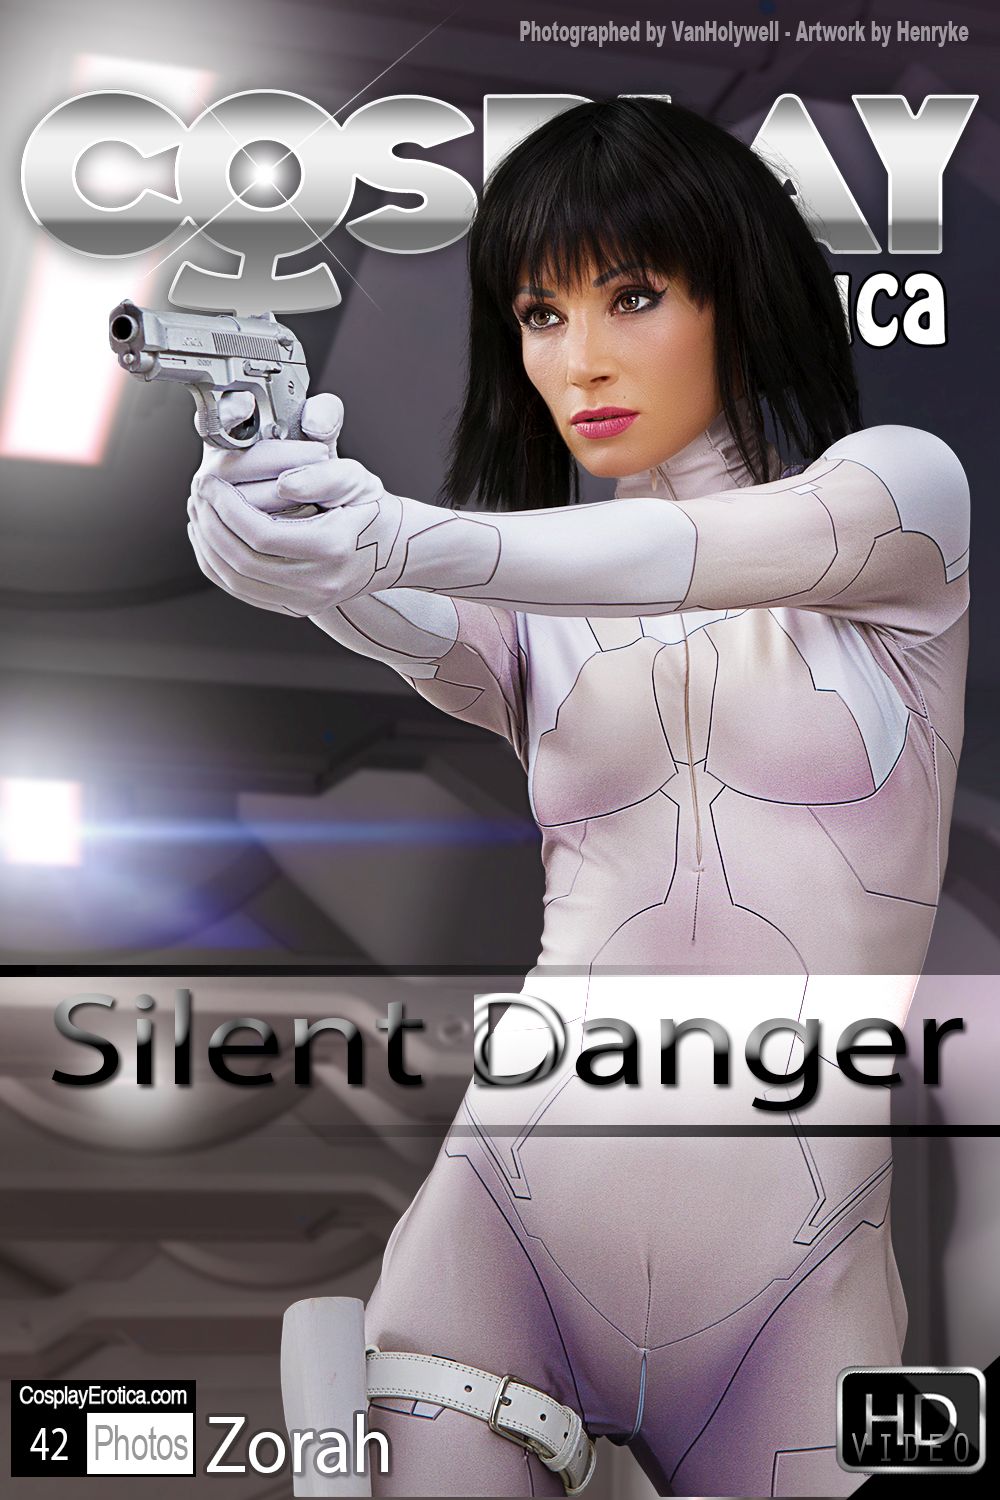 CP-2022-04-25 - Zorah - Silent Danger 1500 (1).jpg